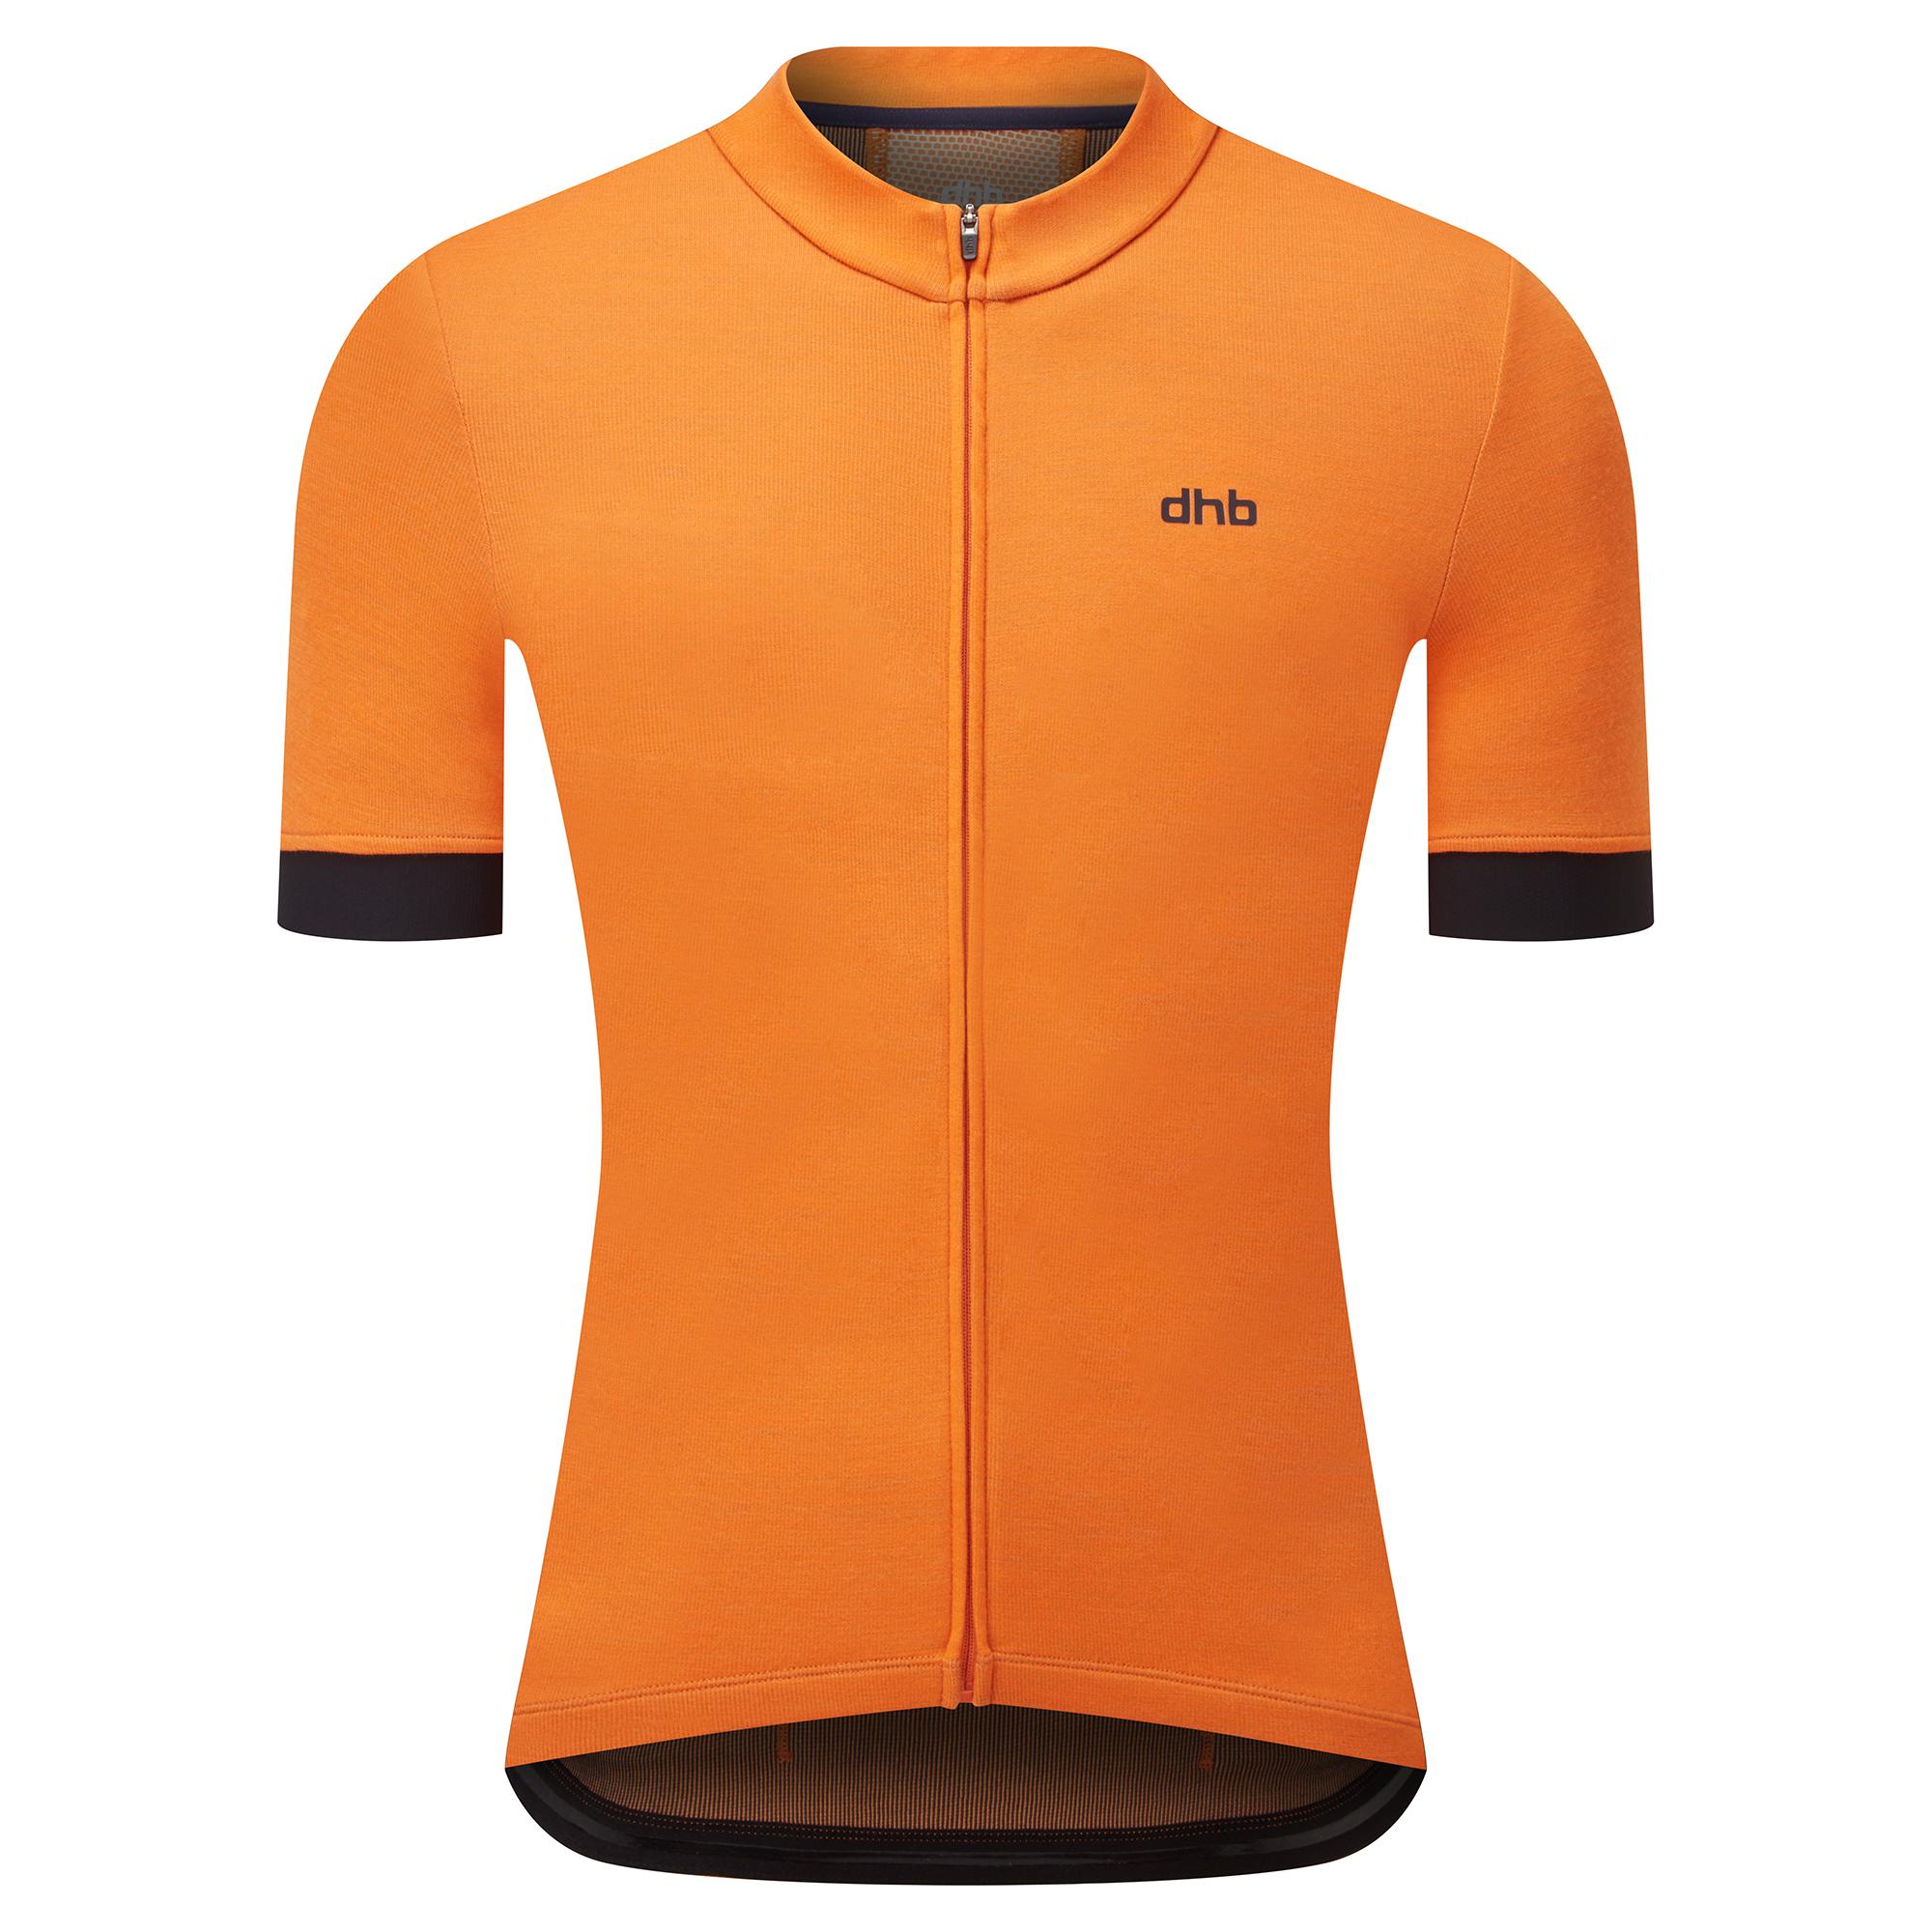 Dhb Merino Short Sleeve Jersey - Persimmon Orange